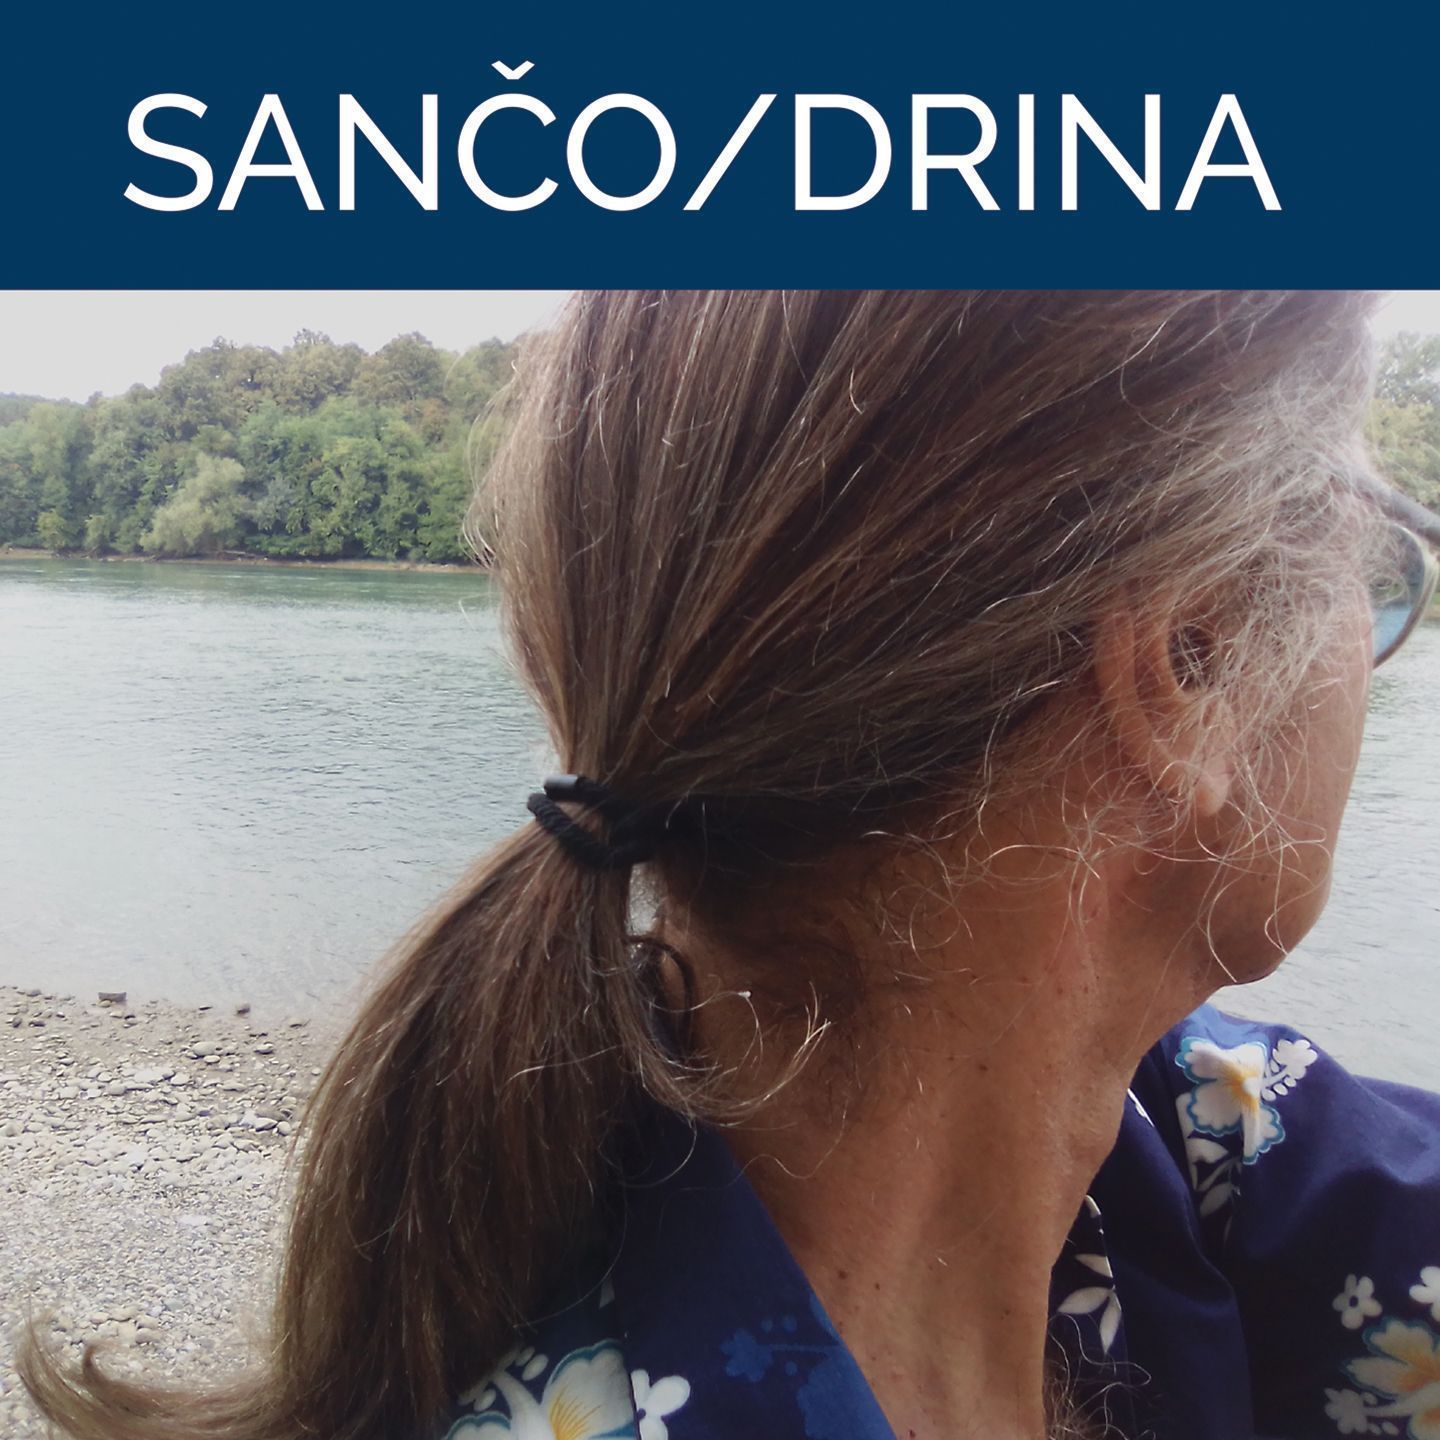 Drina - Sančo